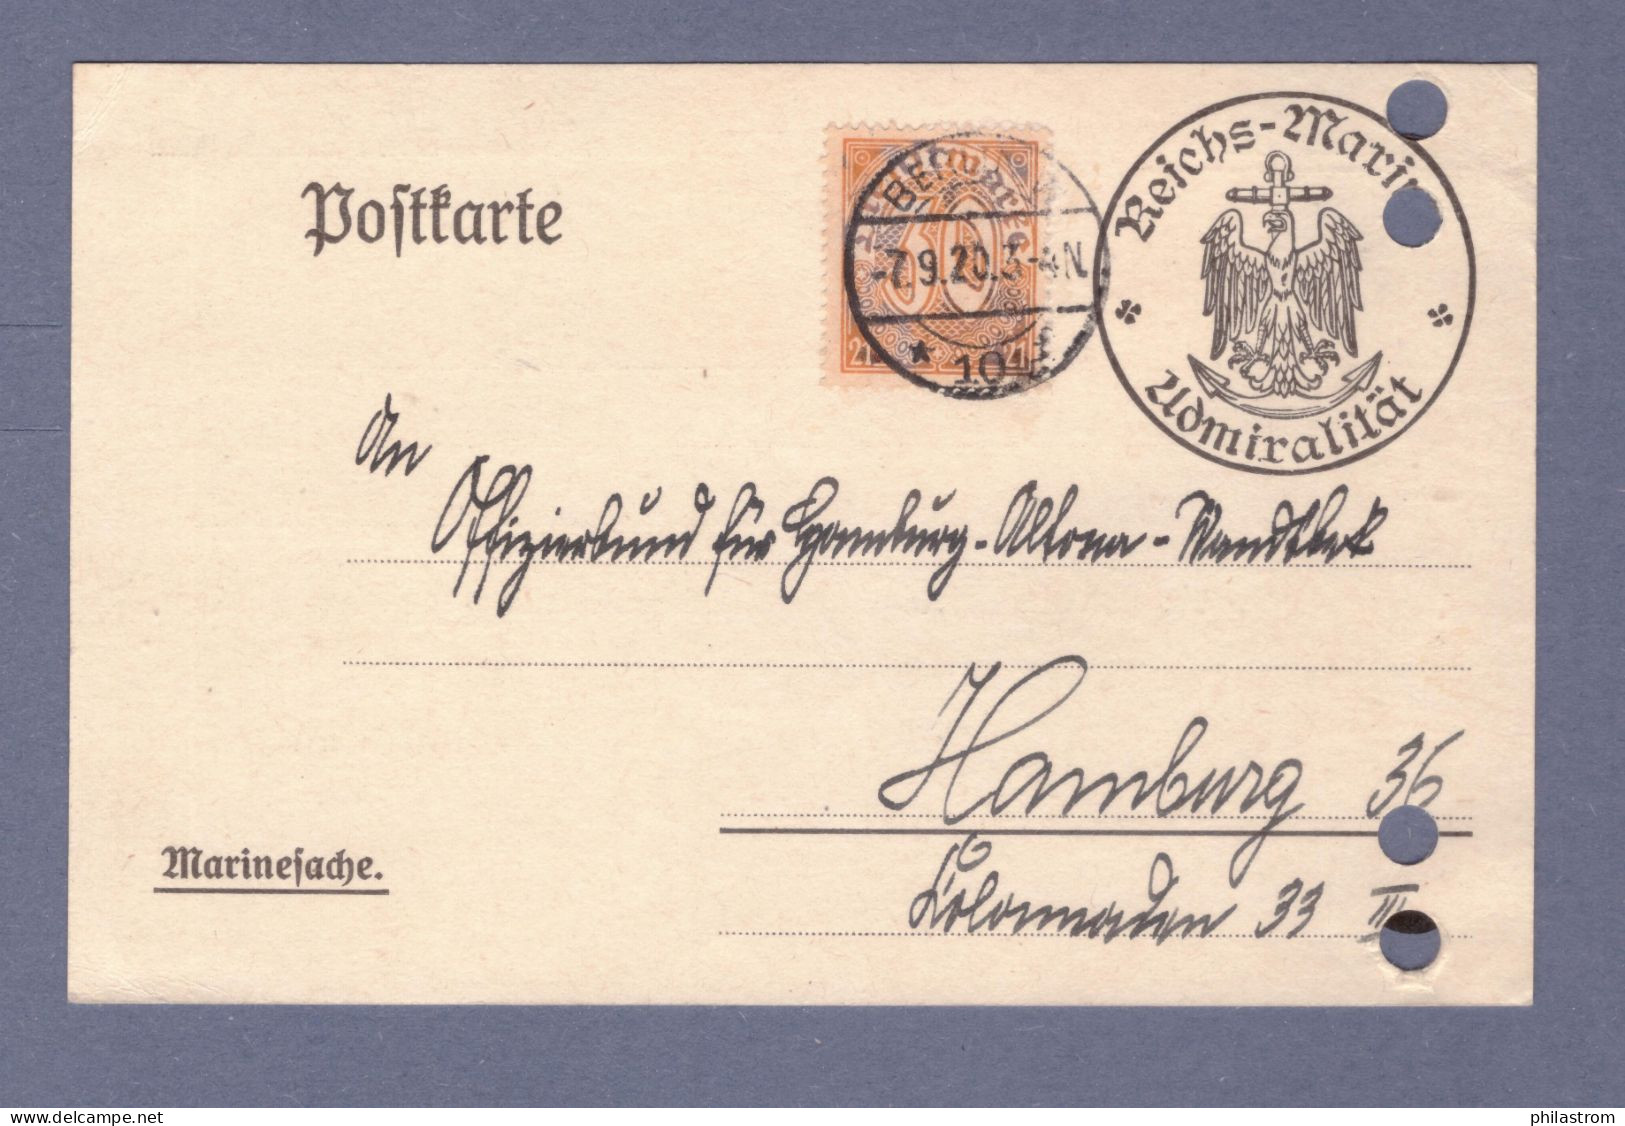 Weimar DIENST Postkarte- MARINESACHE - Reichs-Marine Admiralität - Mi 20 - Berlin SW 7.9.20 --> Hamburg (CG13110-234) - Officials